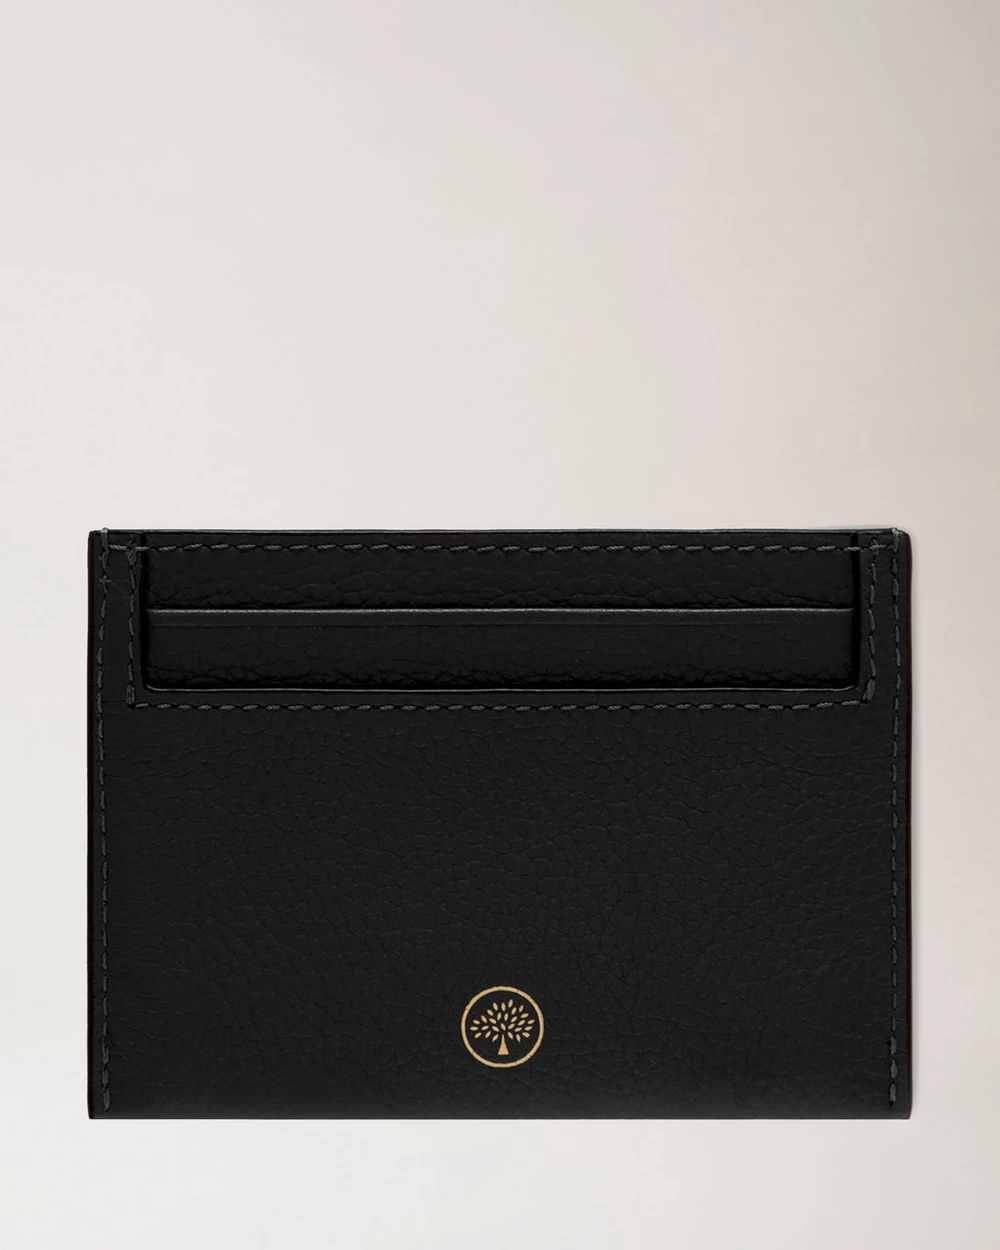 Credit Card Slip Small Classic Grain Leather (Black)